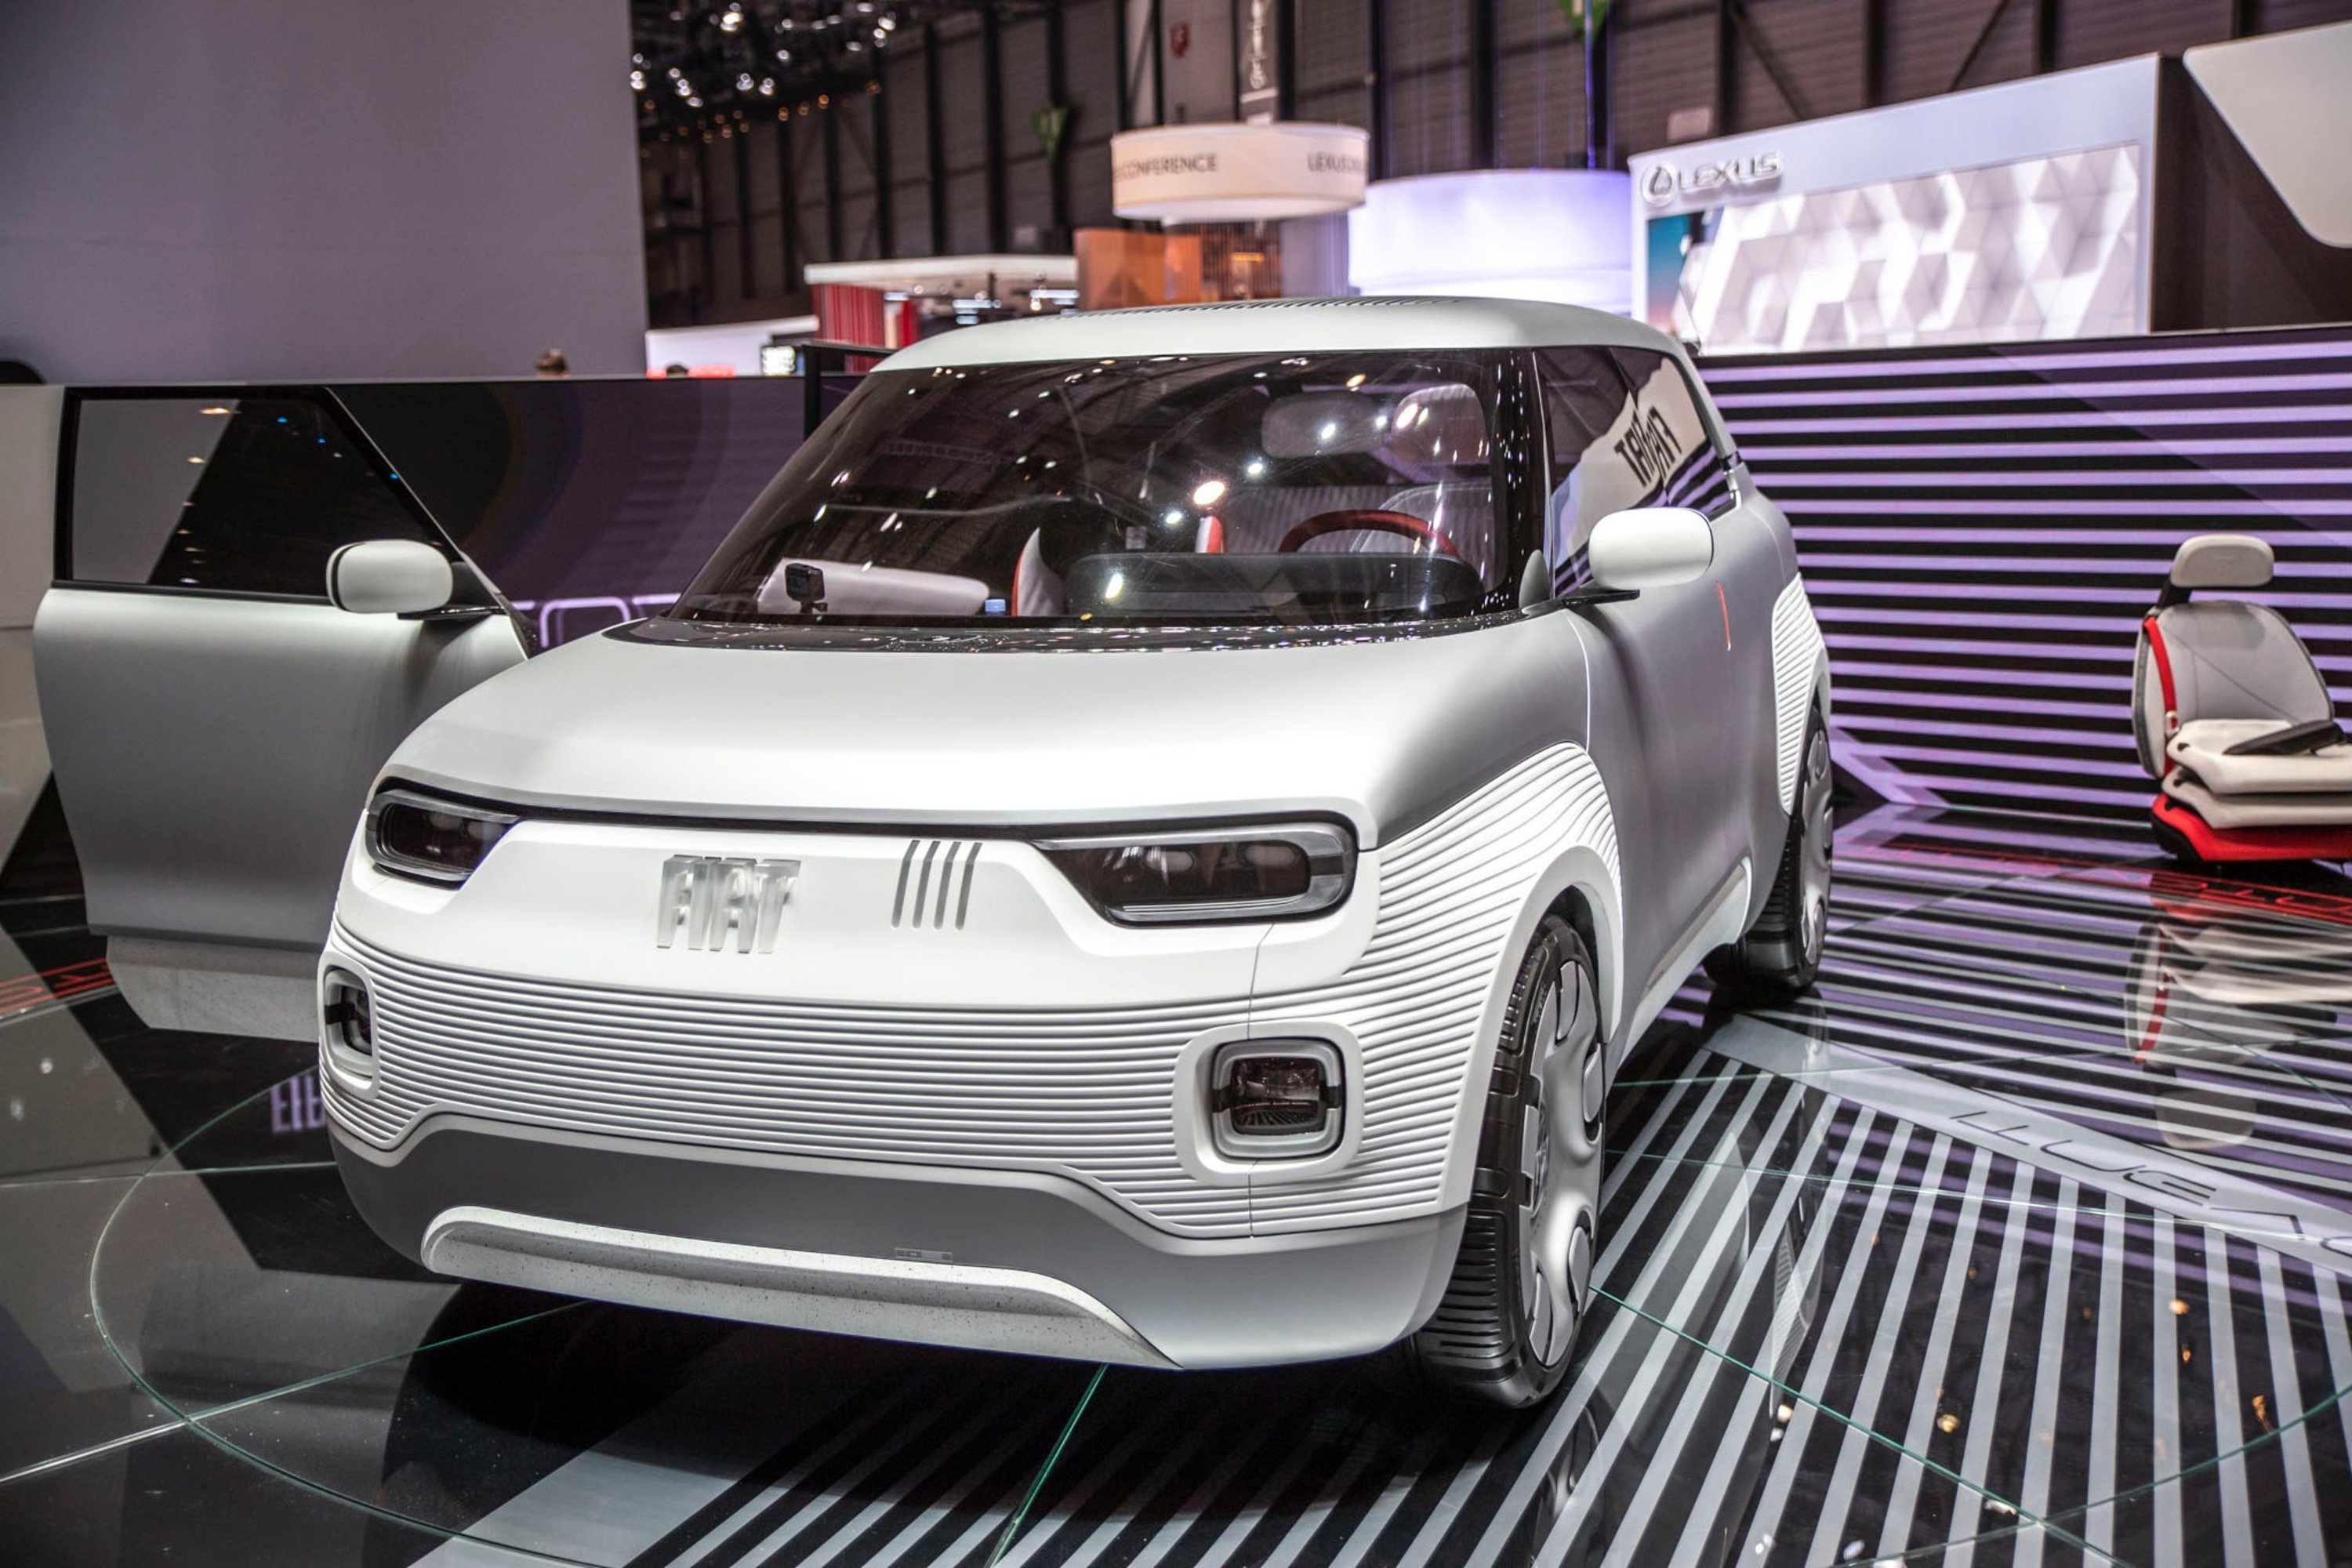 Fiat Centoventi pronta da ordinare su sito Fiat? Prove di configuratore online per la nuova Panda EV del 2021 [Foto gallery e Video]